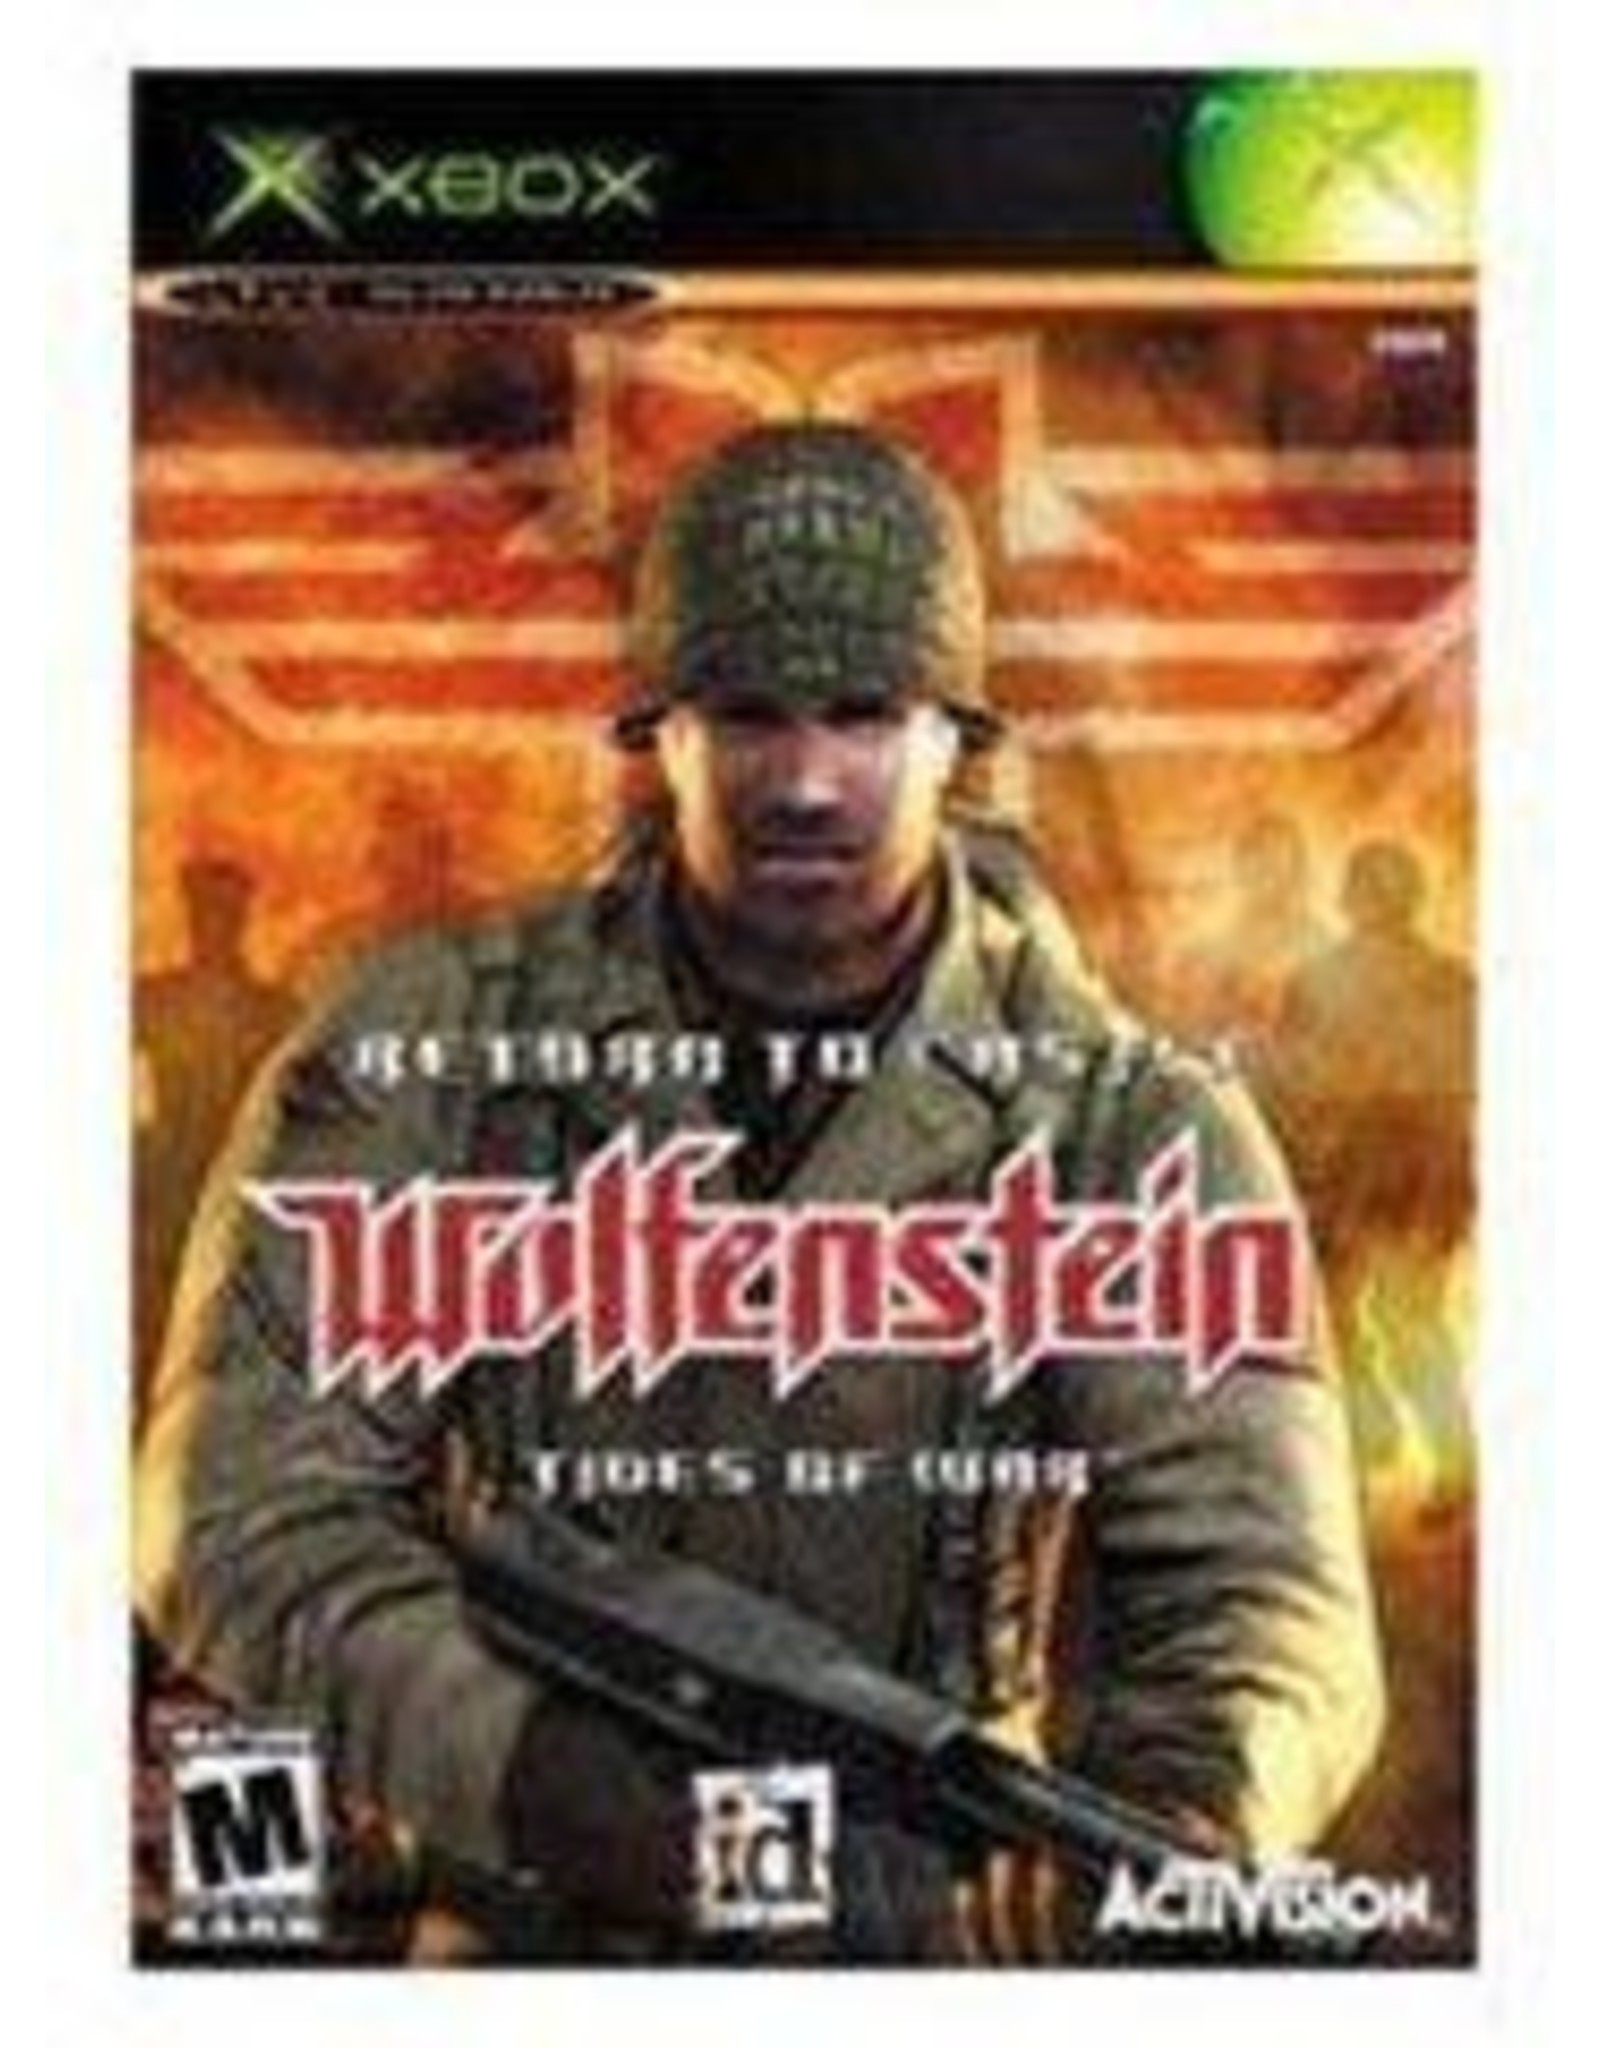 Xbox Return to Castle Wolfenstein (Used)